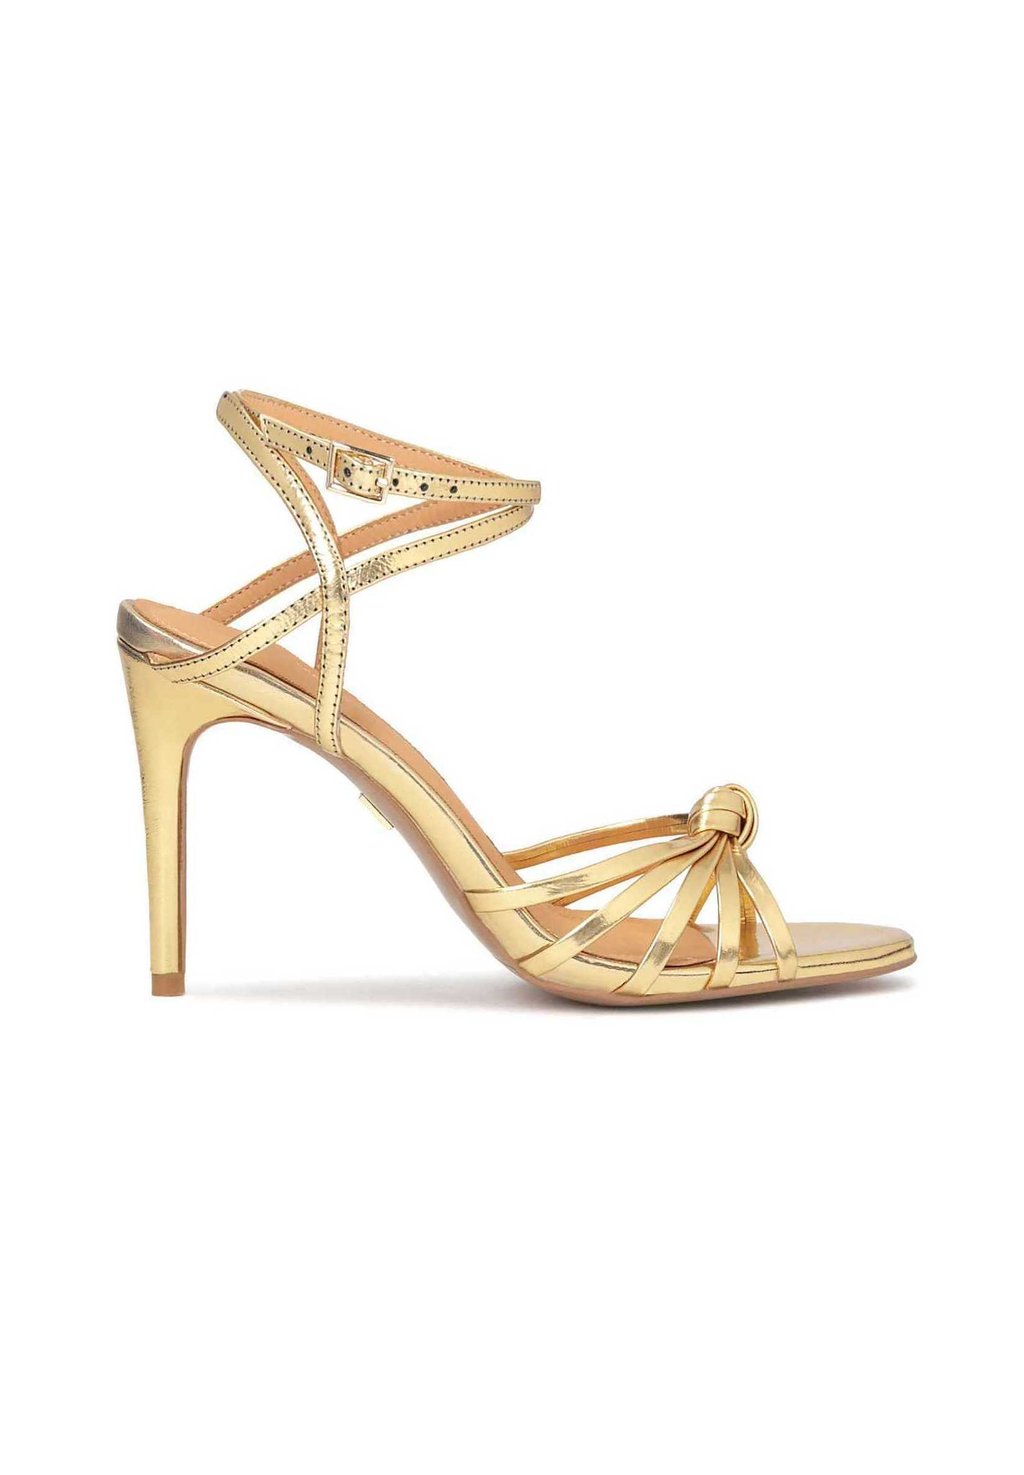 Босоножки на каблуке Diamante-Elegant Sandals With Straps Kazar, золото flat sandals roberto botella босоножки на каблуке